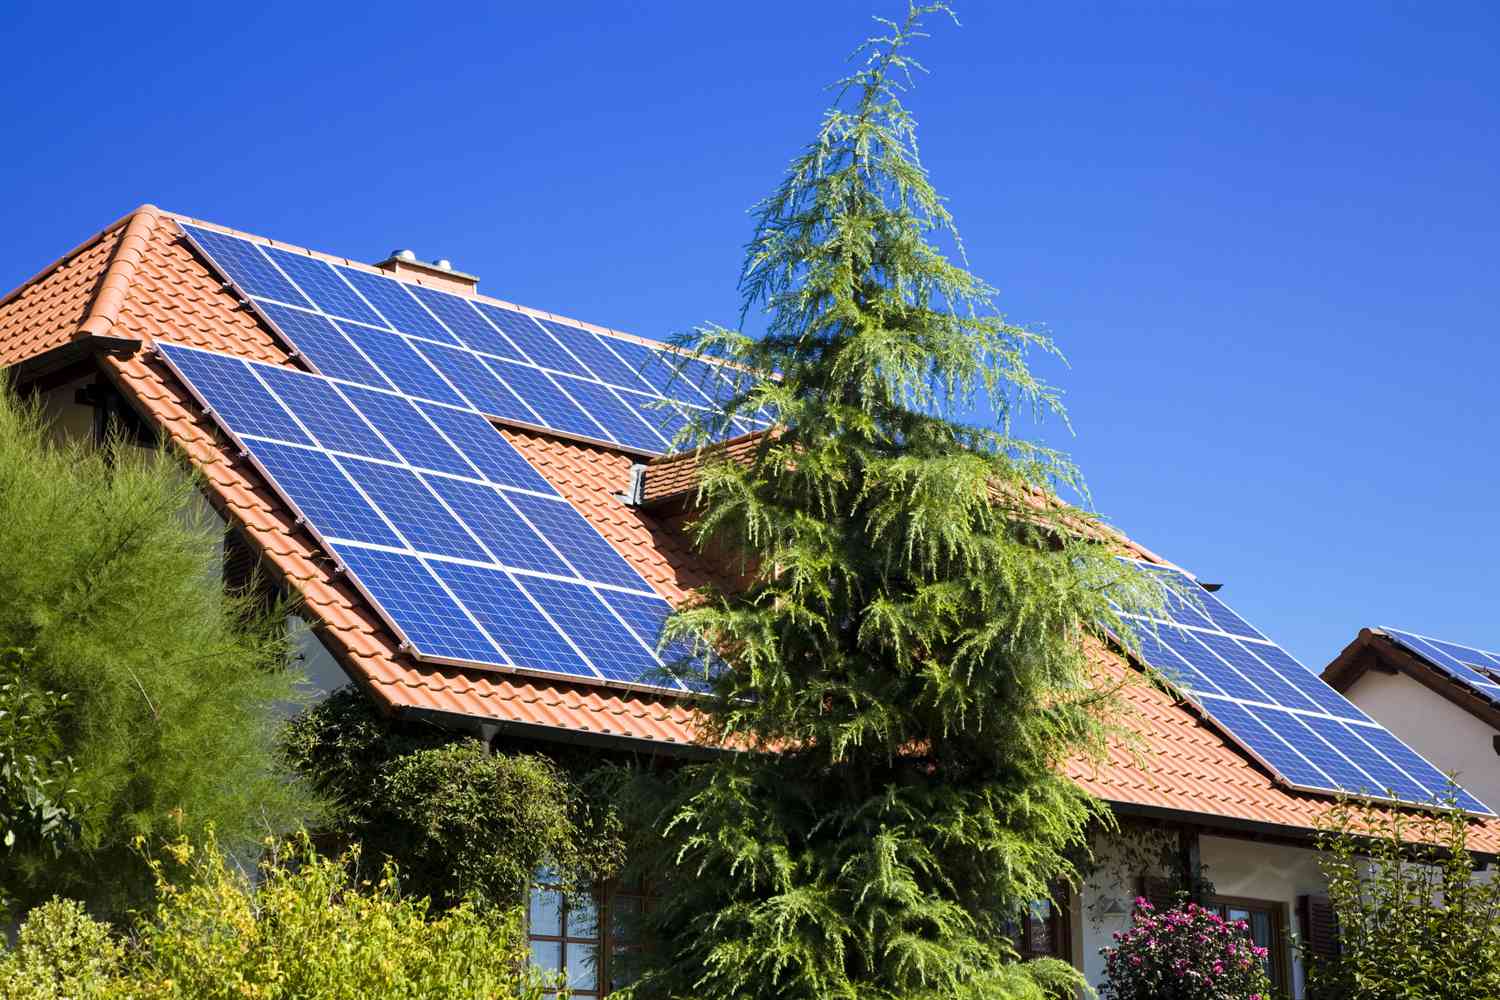 房子急剧倾斜的赤褐色的屋顶覆盖着太阳能电池板的数组与树木和灌木环绕它”class=